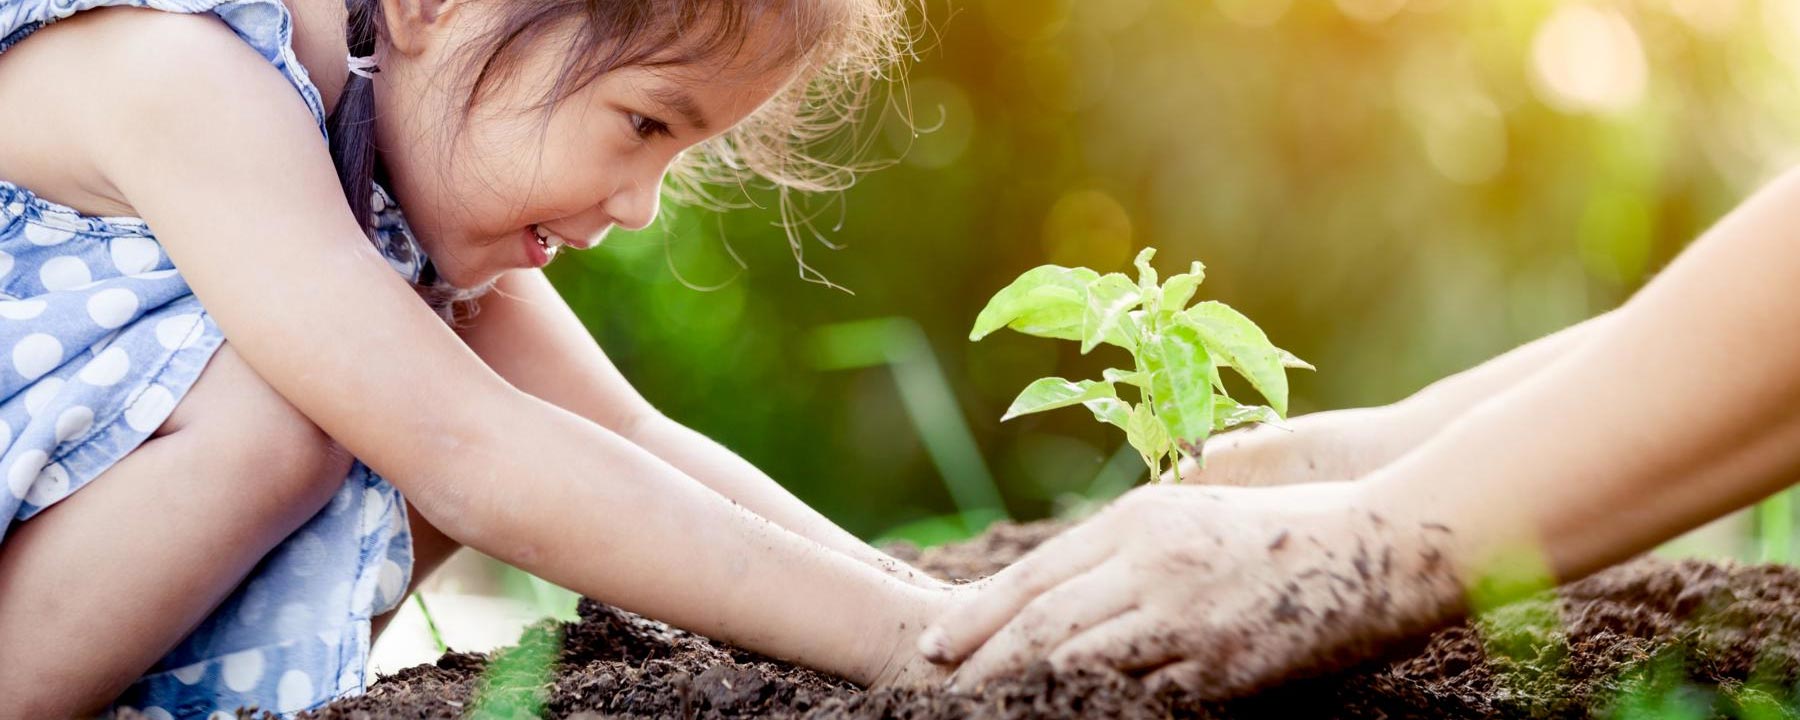 Ein Kind pflanzt einen Setzling im eigenen Garten mit den helfenden Händen ihrer Mutter.